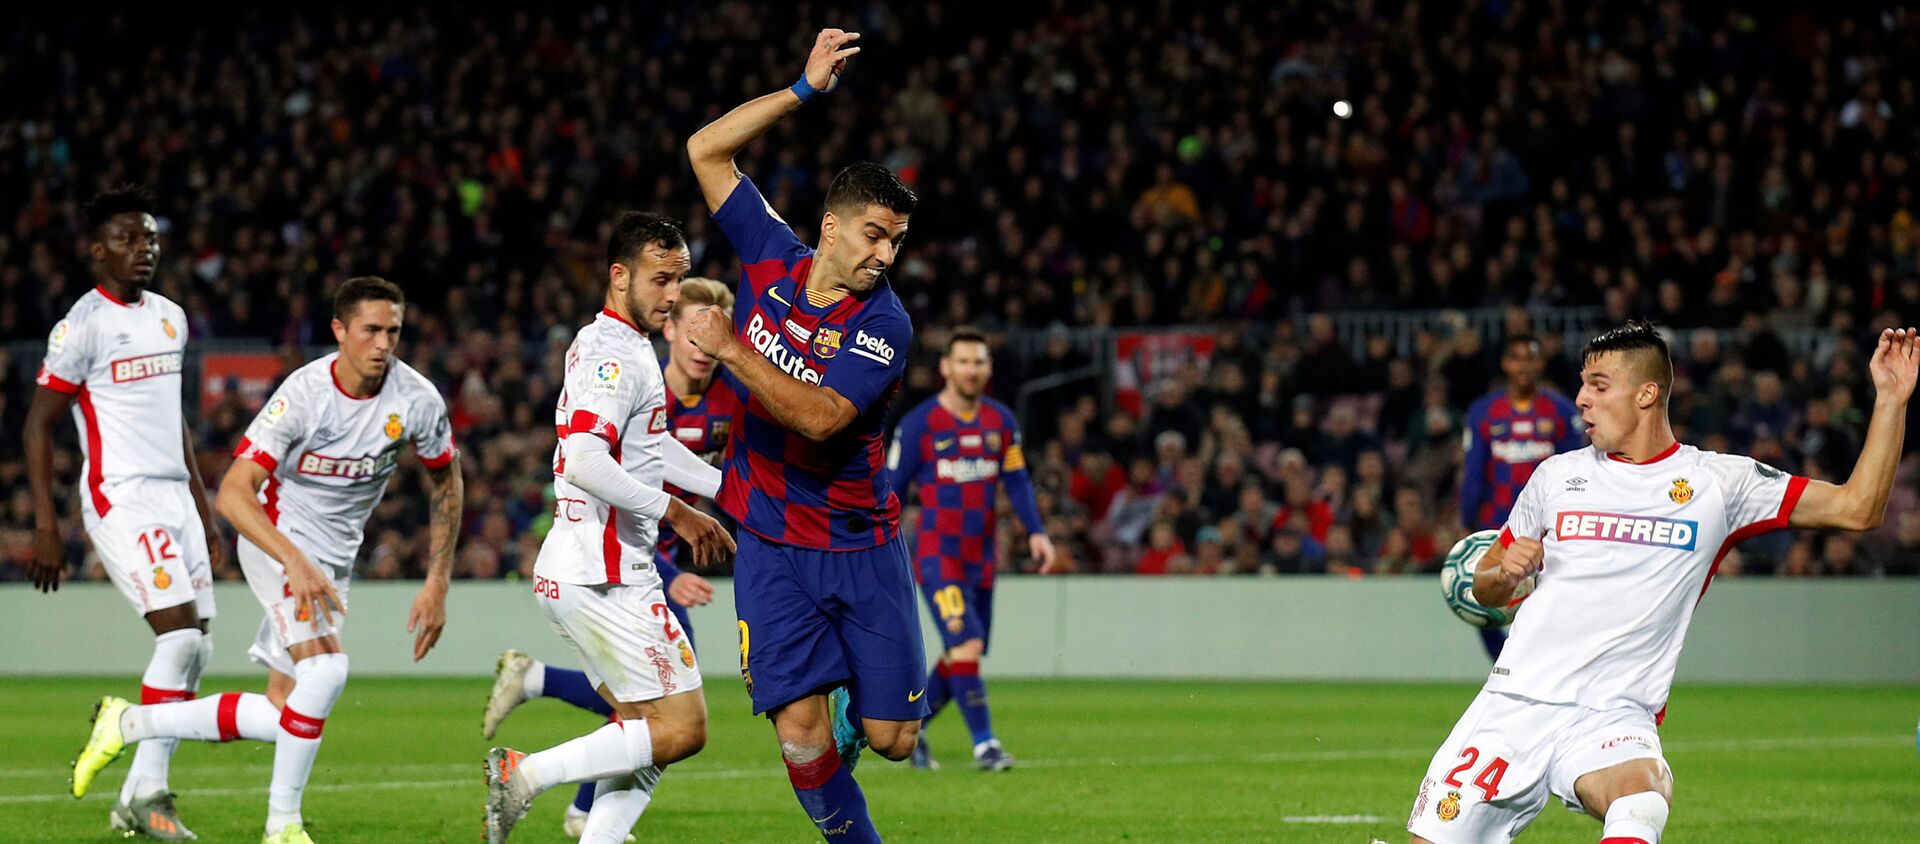 El delantero del FC Barcelona Luis Suárez marca un gol de tacón - Sputnik Mundo, 1920, 08.12.2019